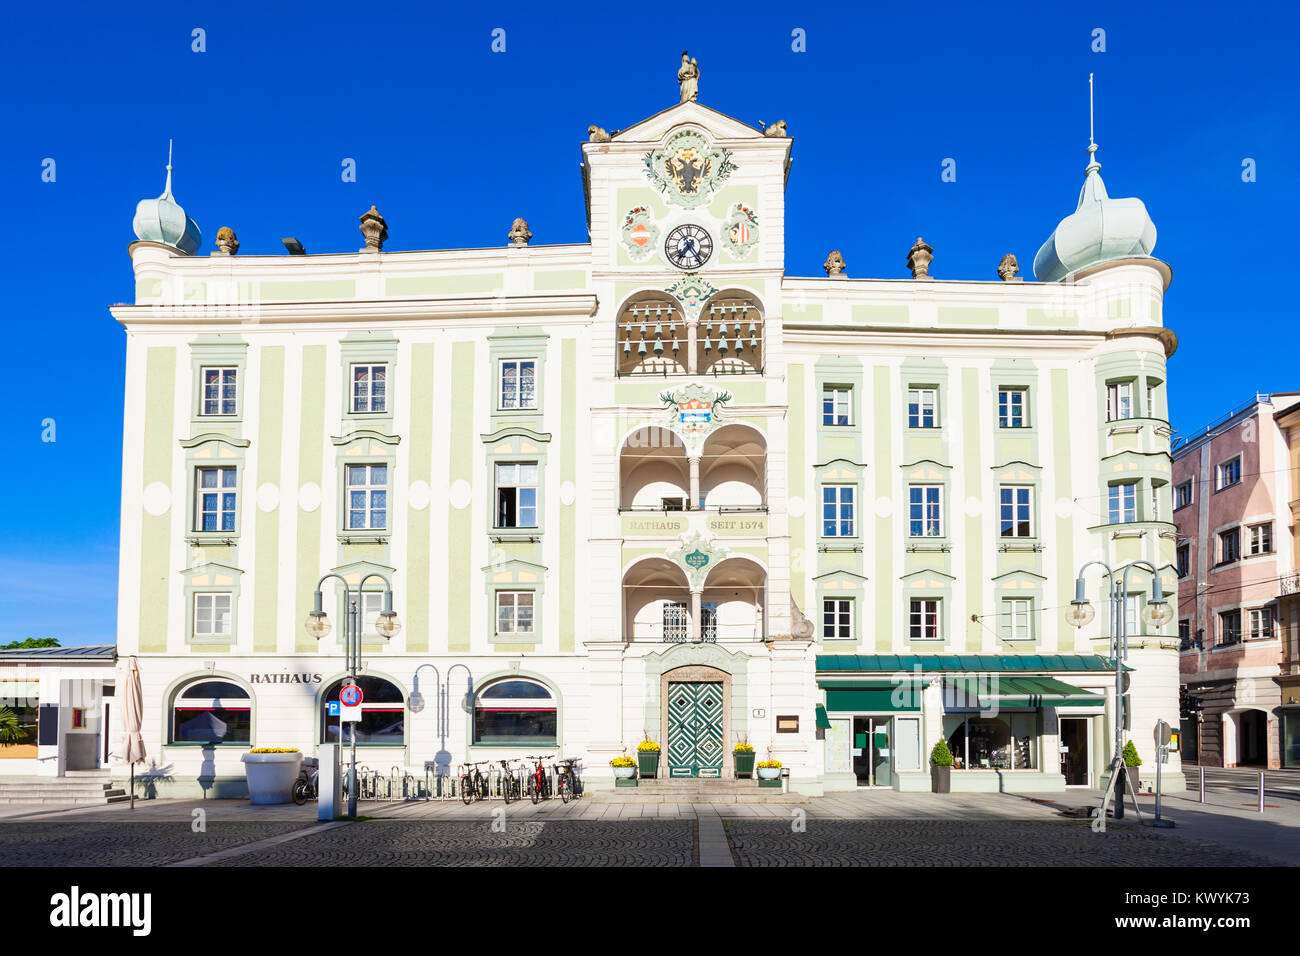 Rathaus or Town Hall in Gmunden, Austria. Gmunden is a town in Salzkammergut region, Upper Austria. Stock Photo